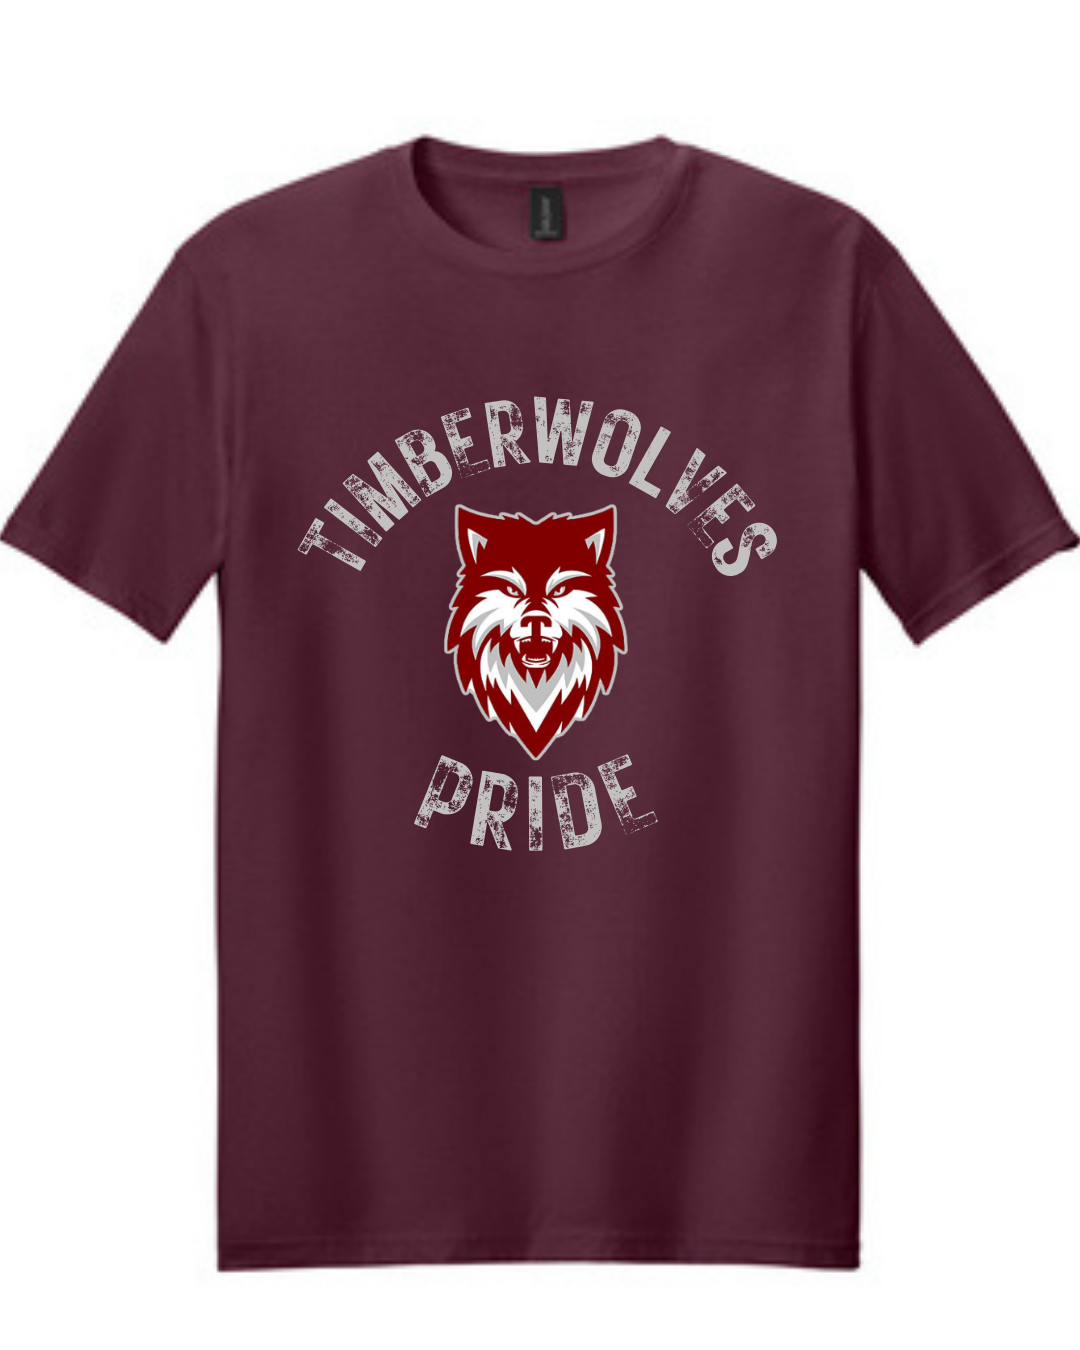 Timberwolves Pride